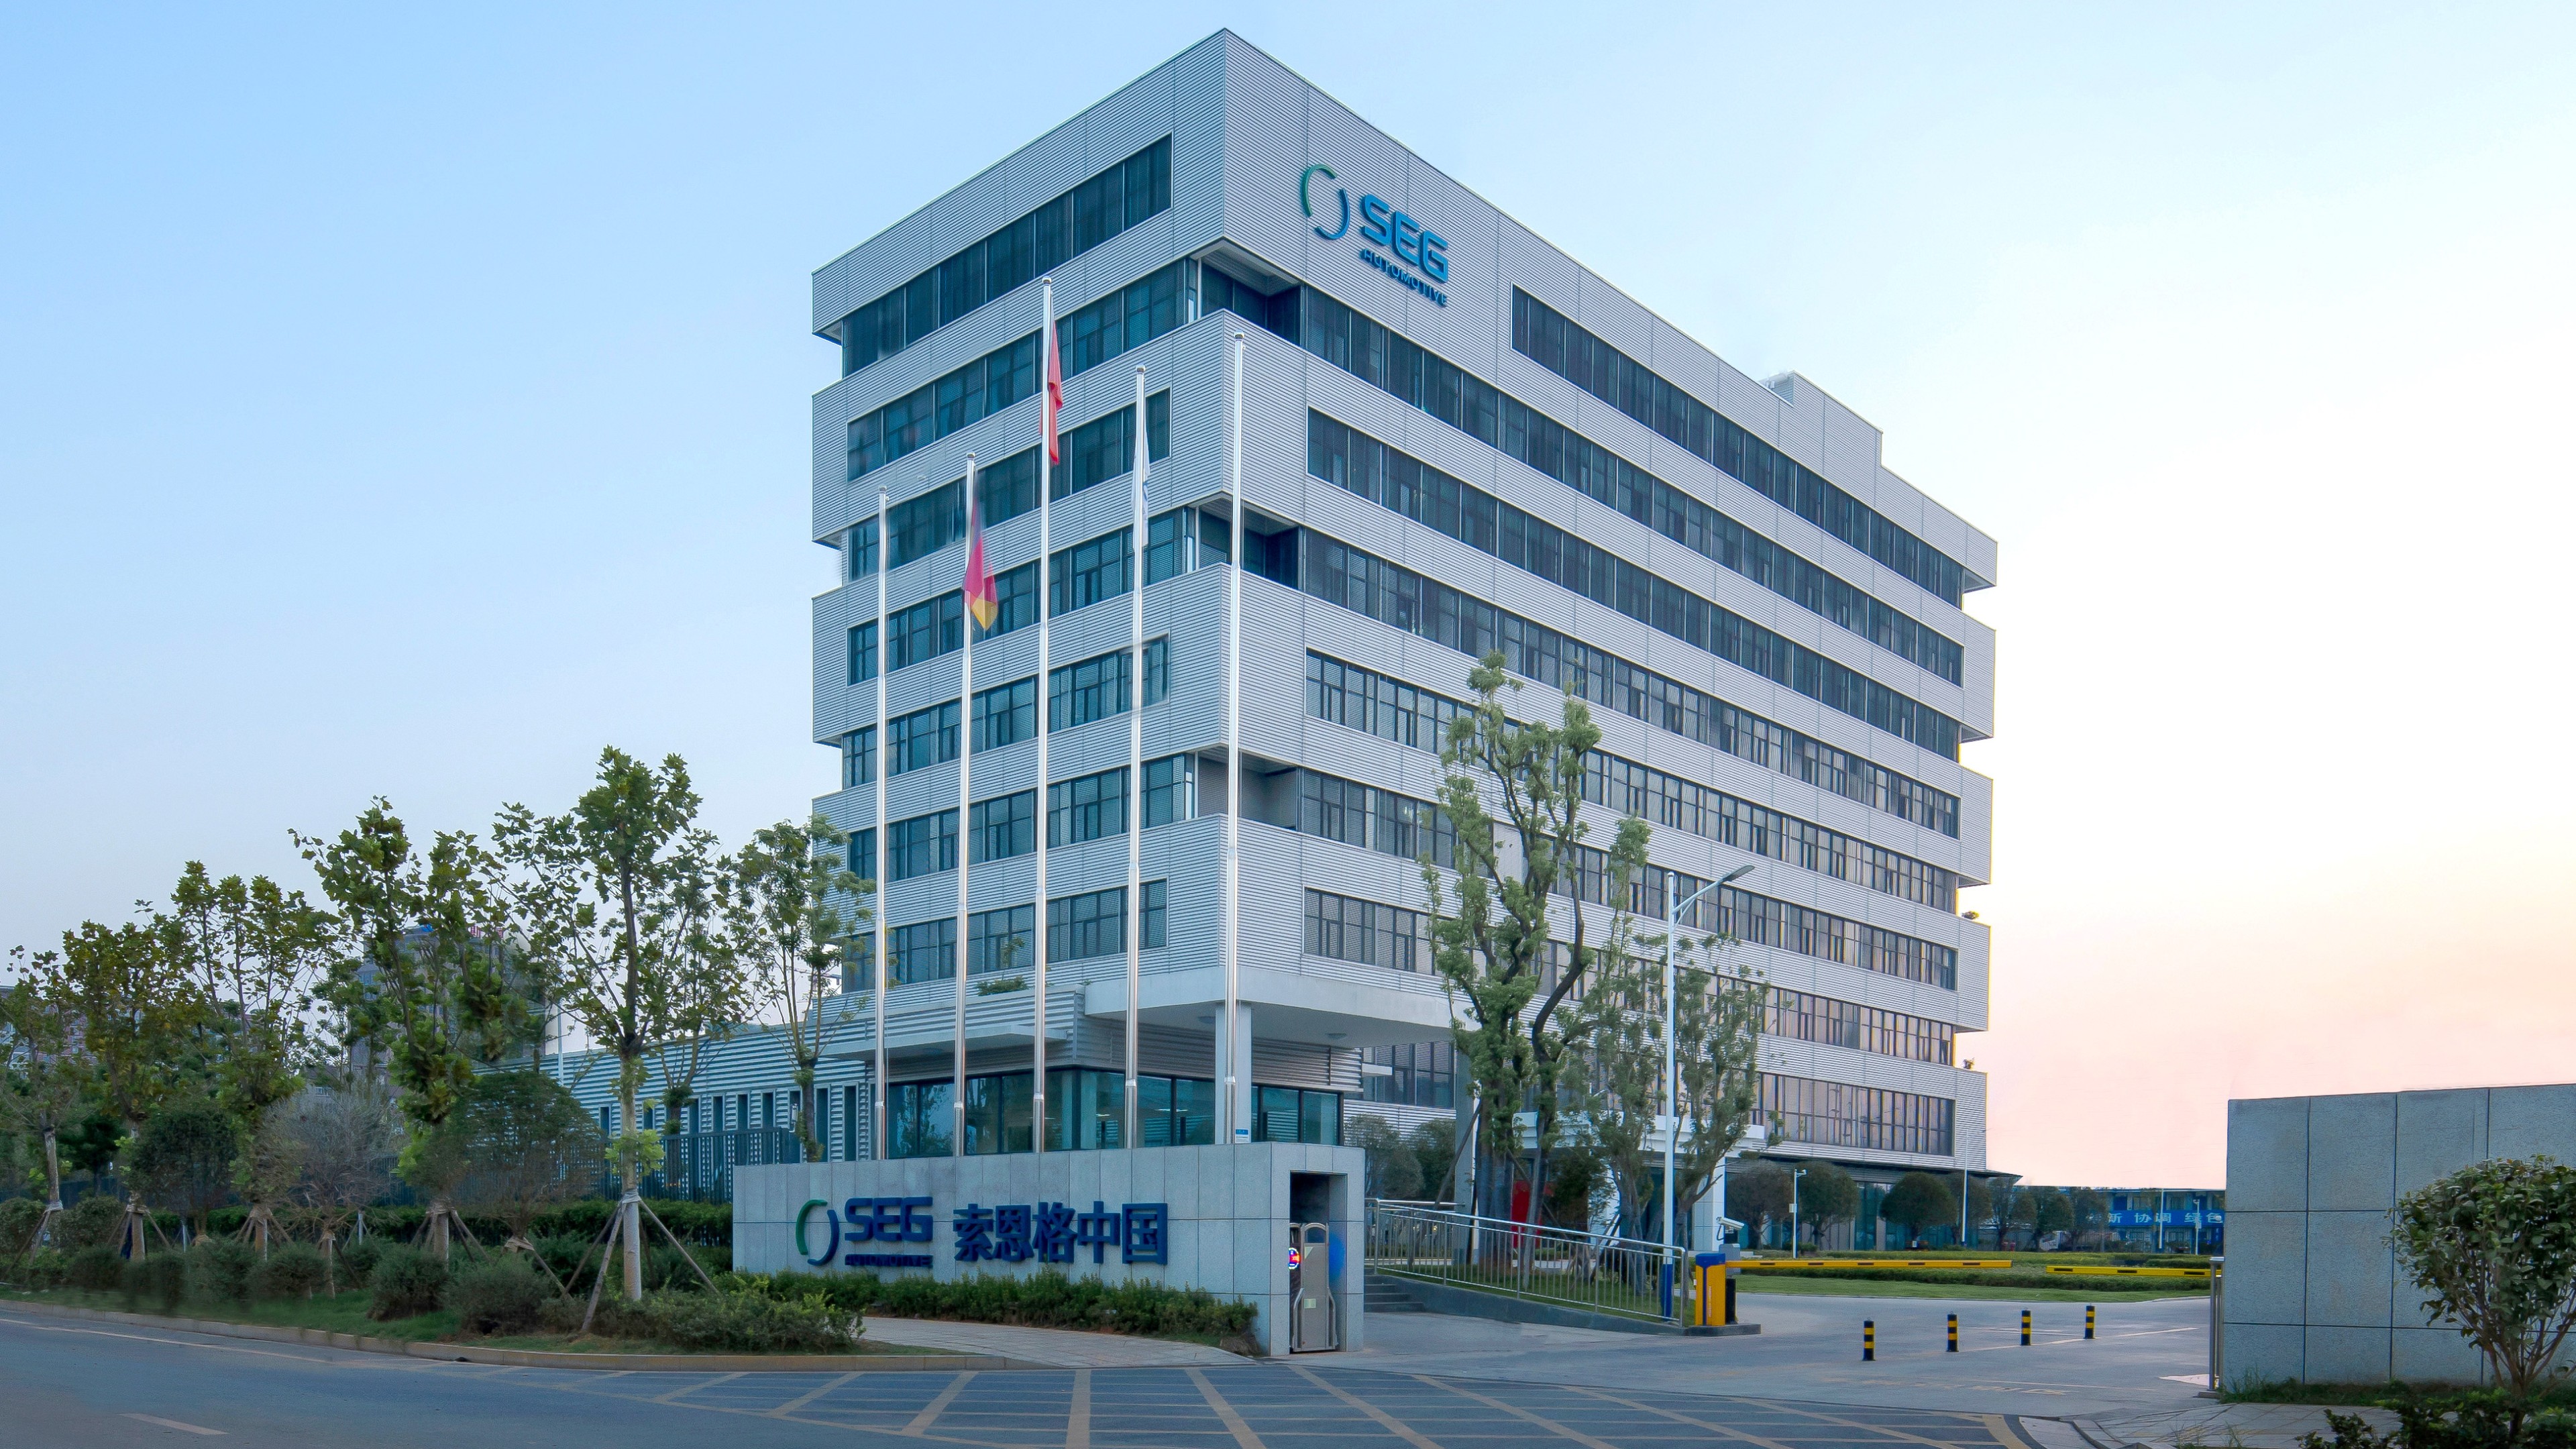 Eingangstor und Verwaltungsgebäude des SEG Automotive Werks am Standort Changsha, China